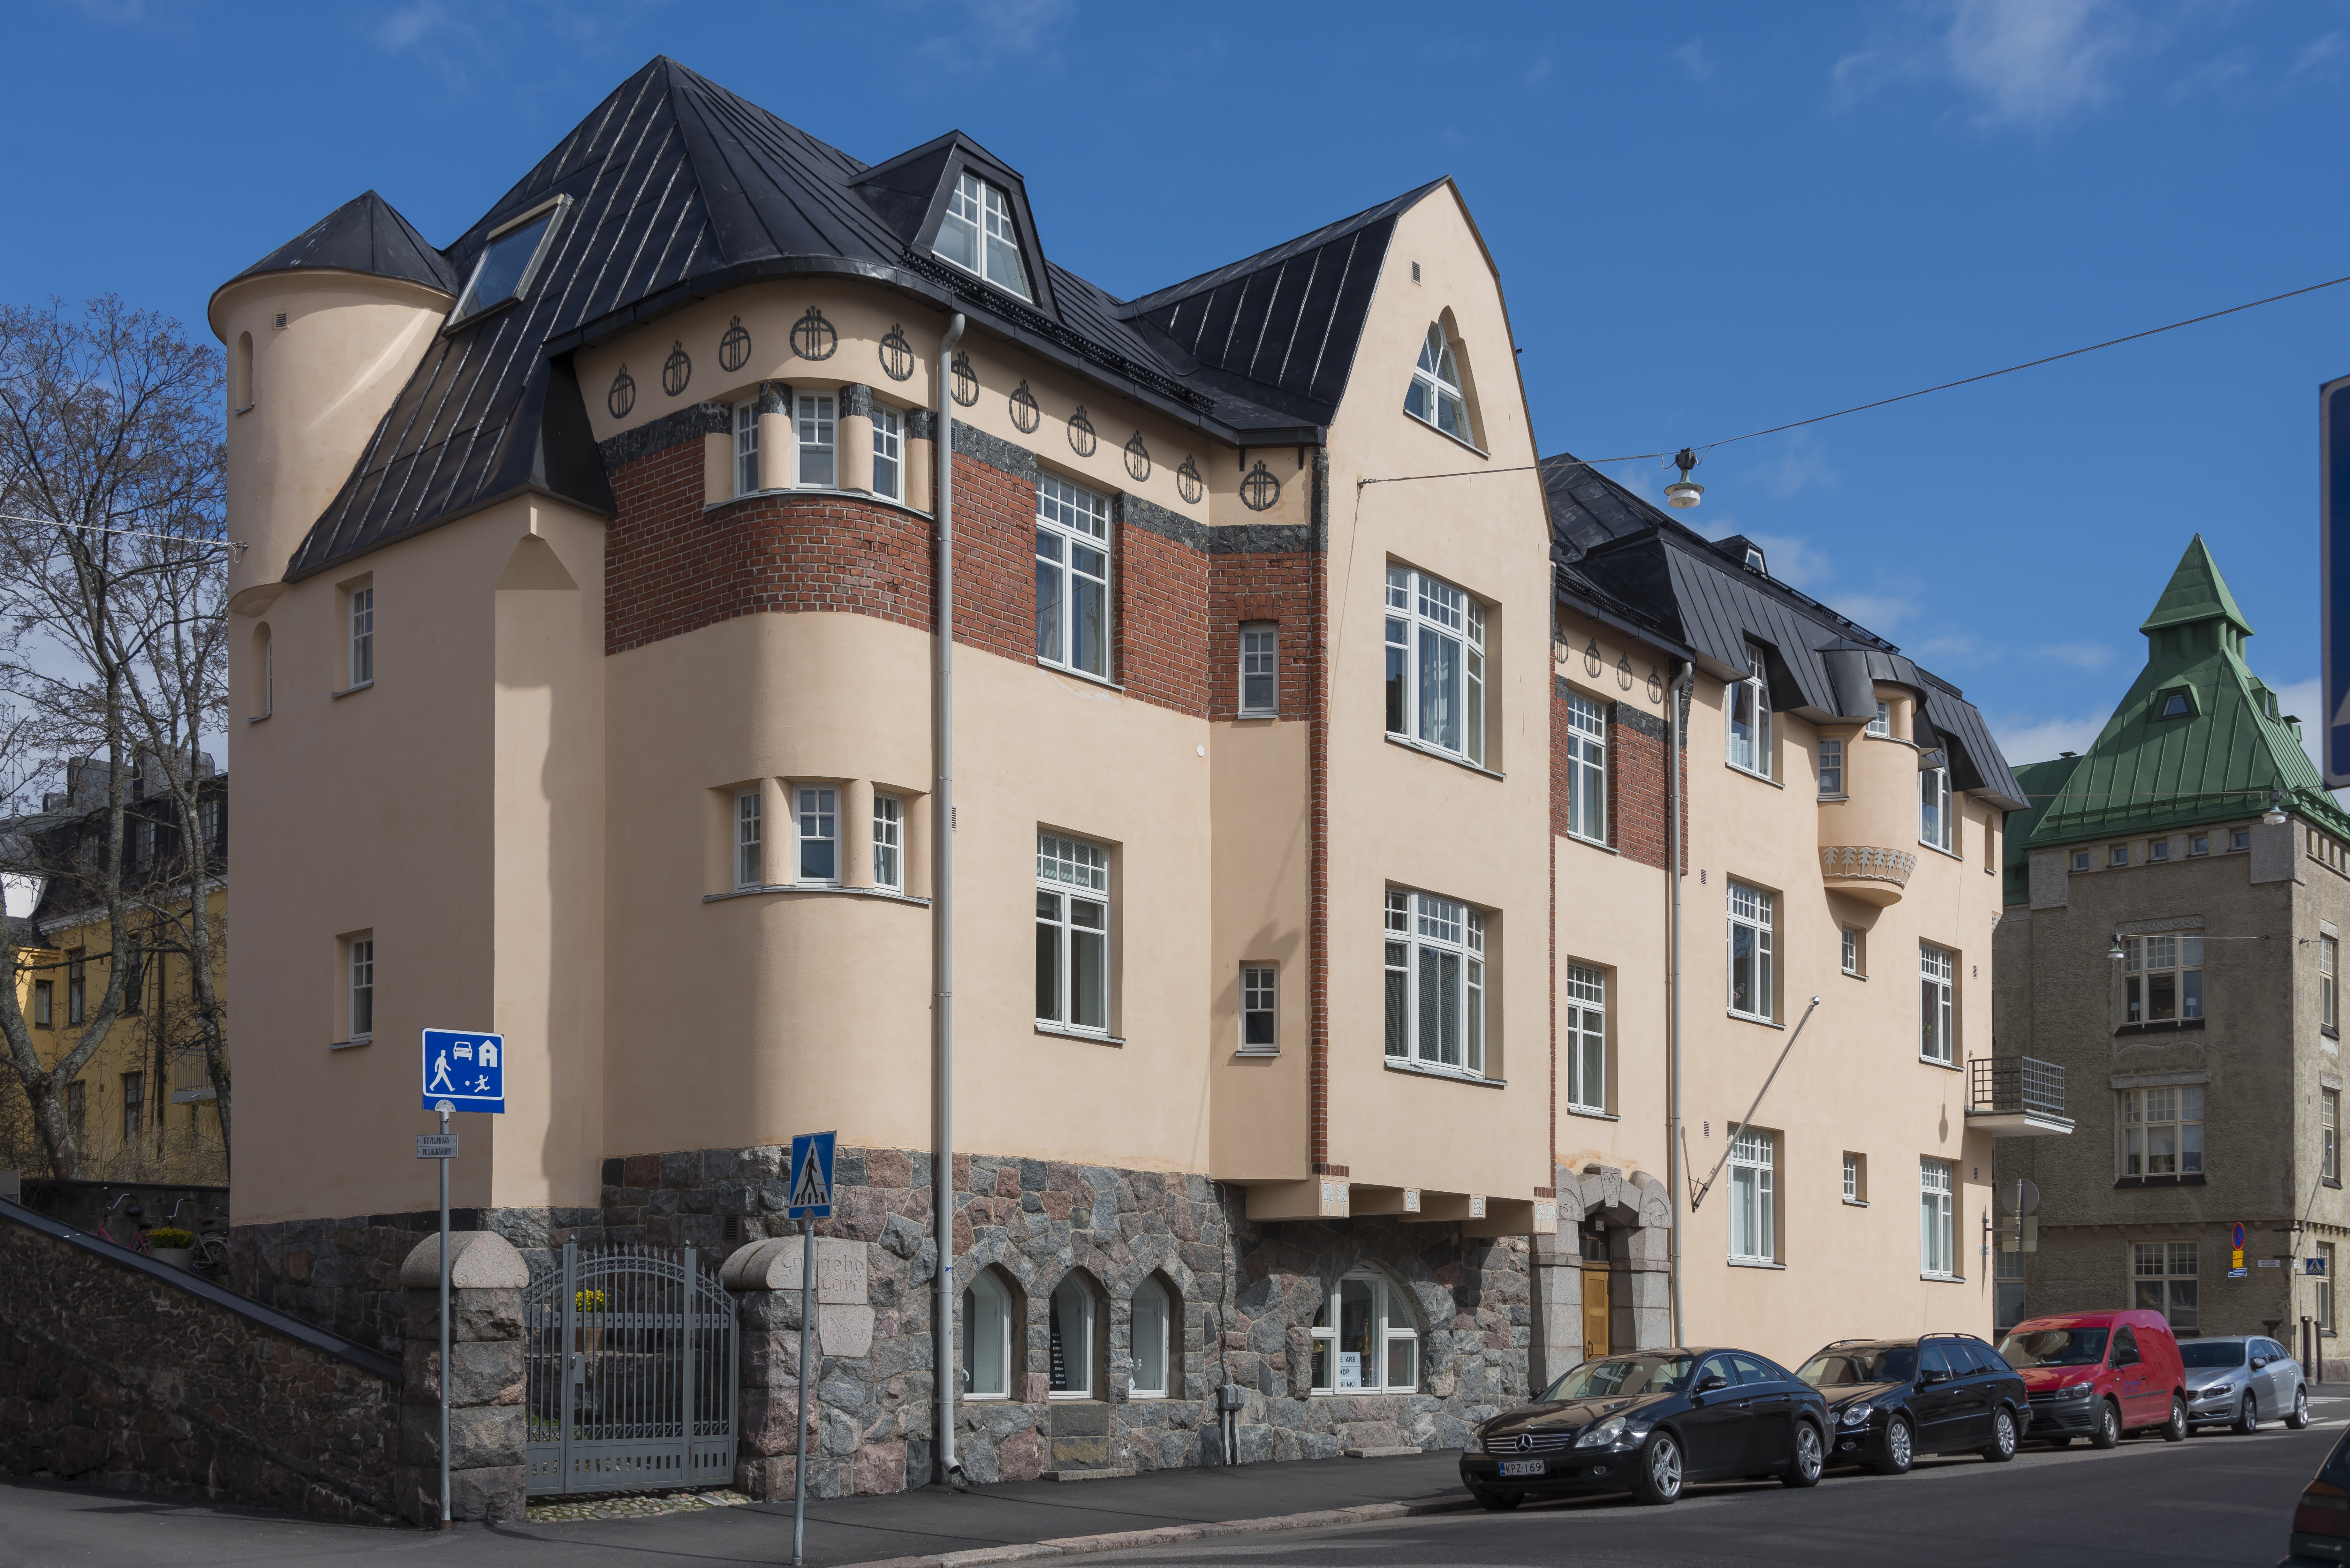 Pietarinkatu 23 - Huvilakatu 18. Waldemar Wileniuksen suunnittelema rakennus "Gunnebo Gård". Rakennusvuosi 1905.